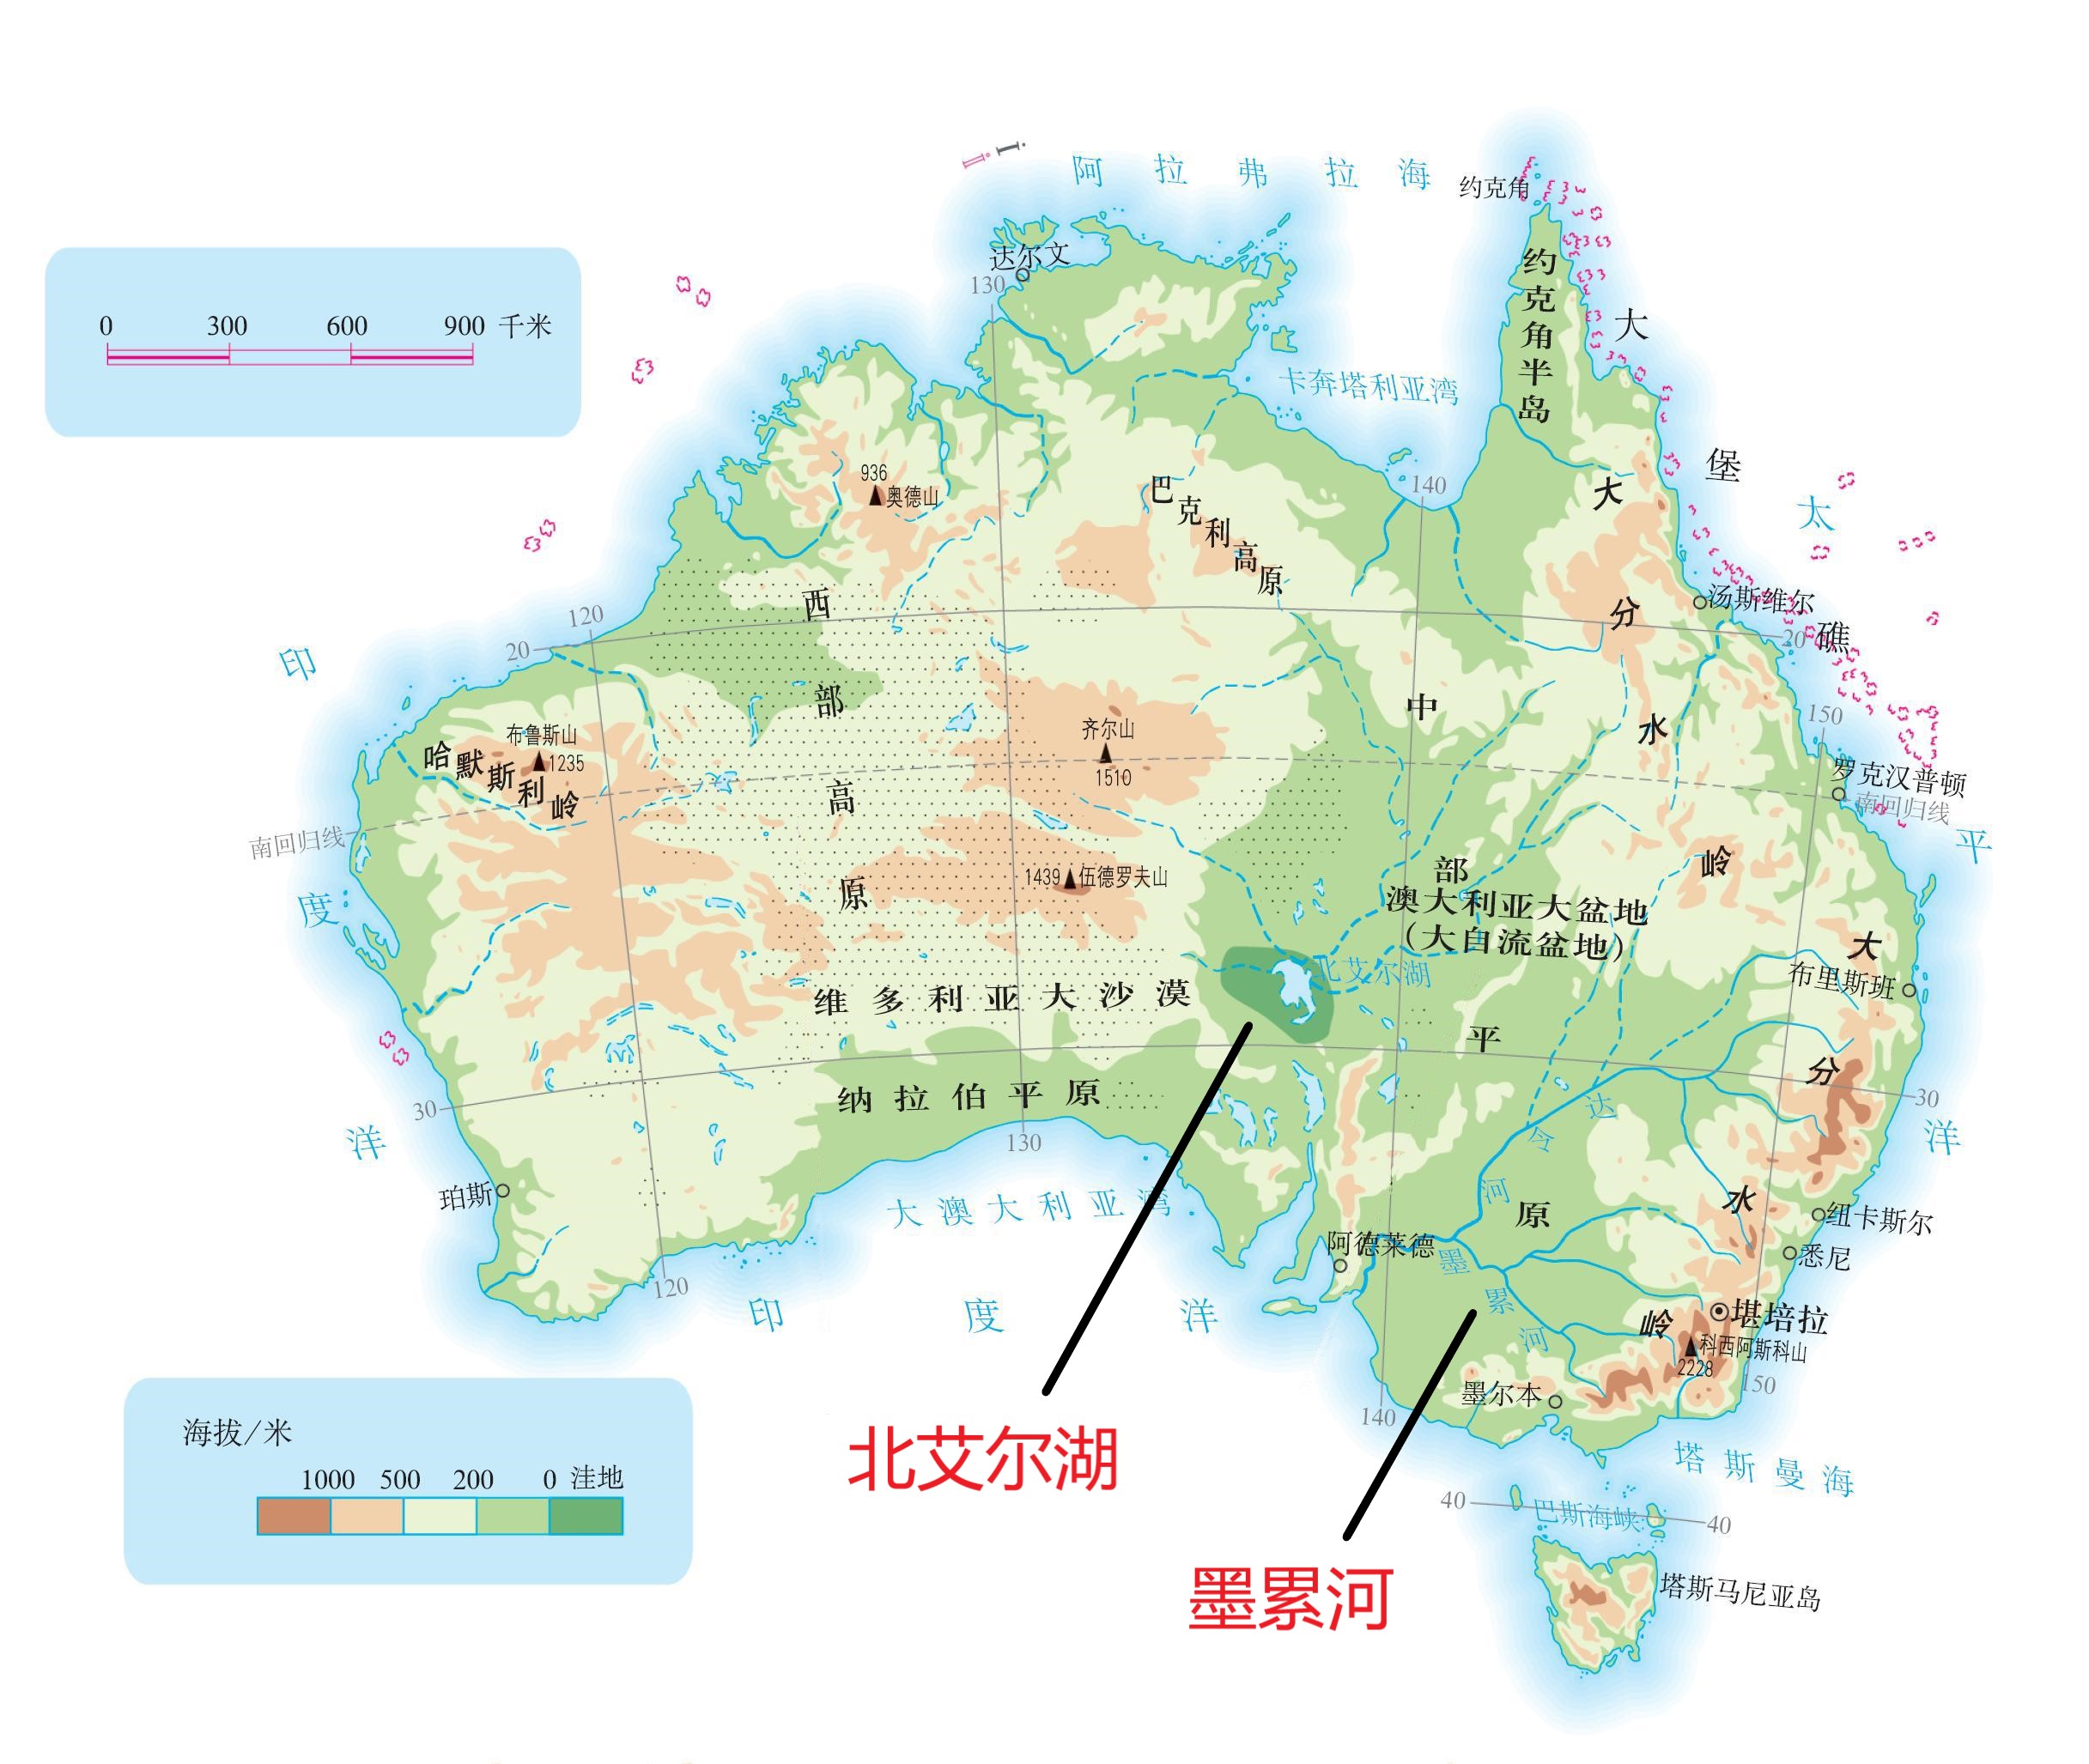 在澳大利亚的东部地区,主要分布着墨累河,达令河,为当地居民提供了